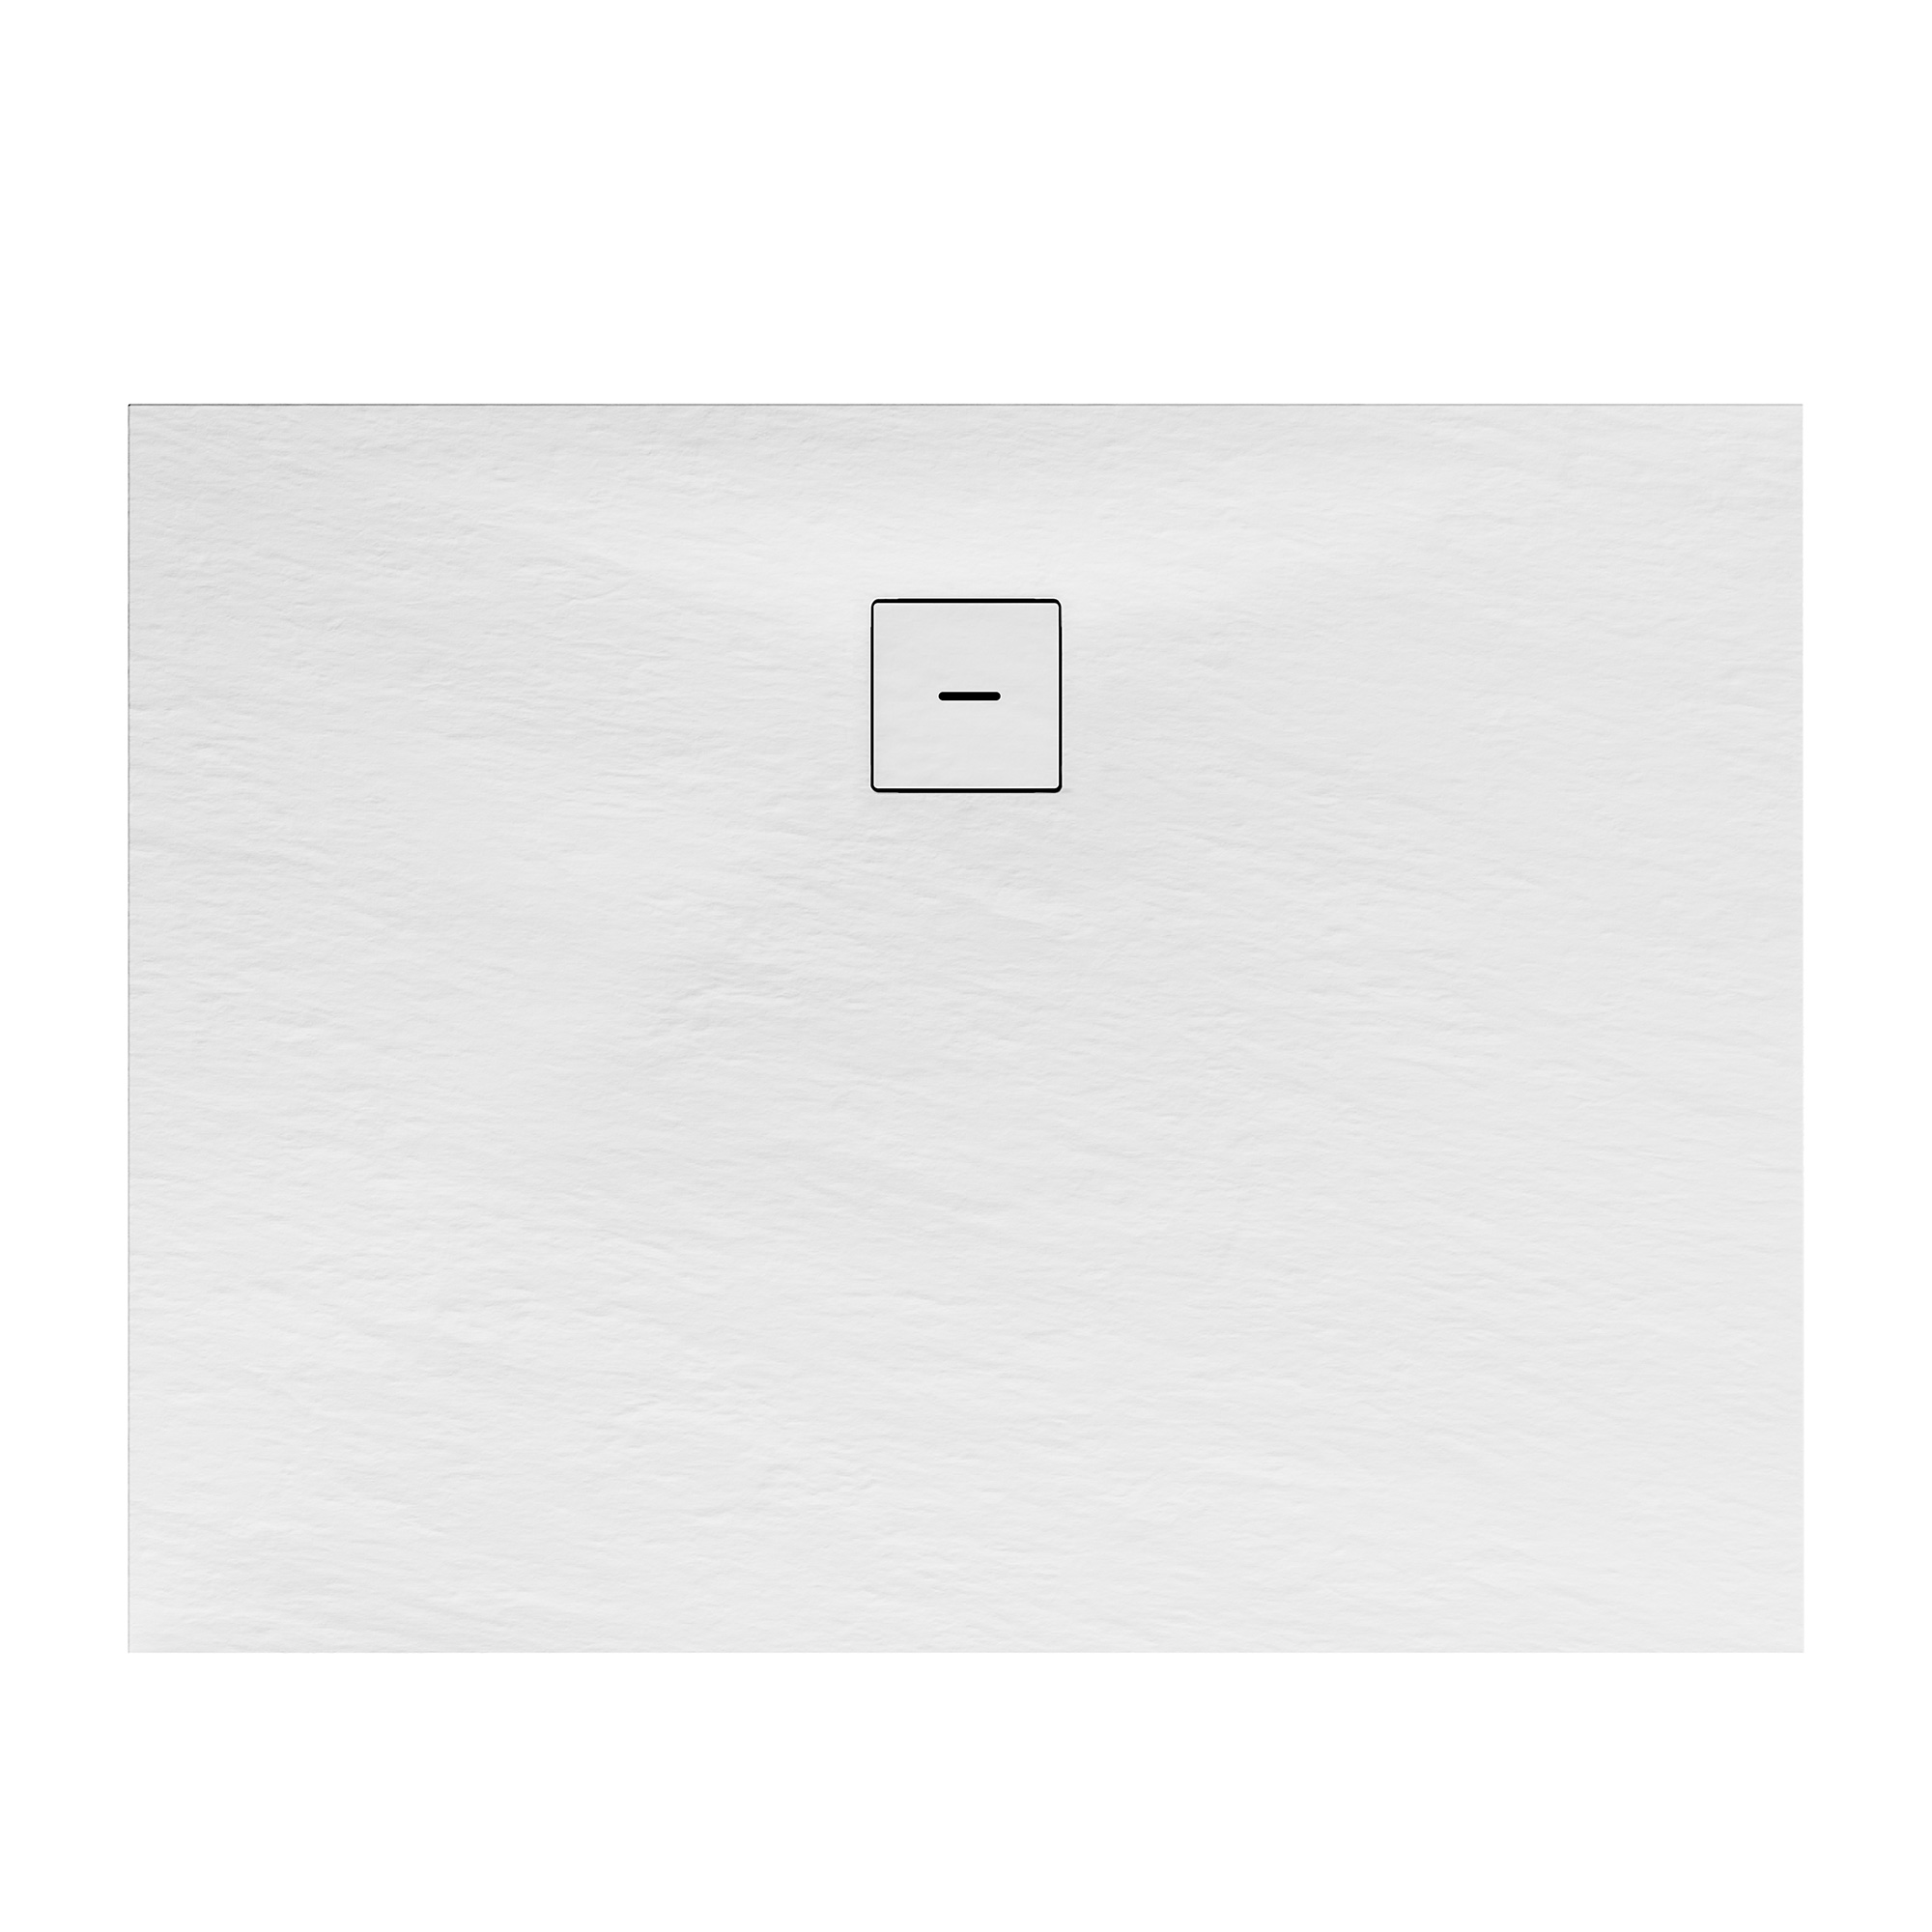 Duschwanne, Mineralguss, flach, weiß, rechteckig, 120 x 80 x 4 cm + product picture